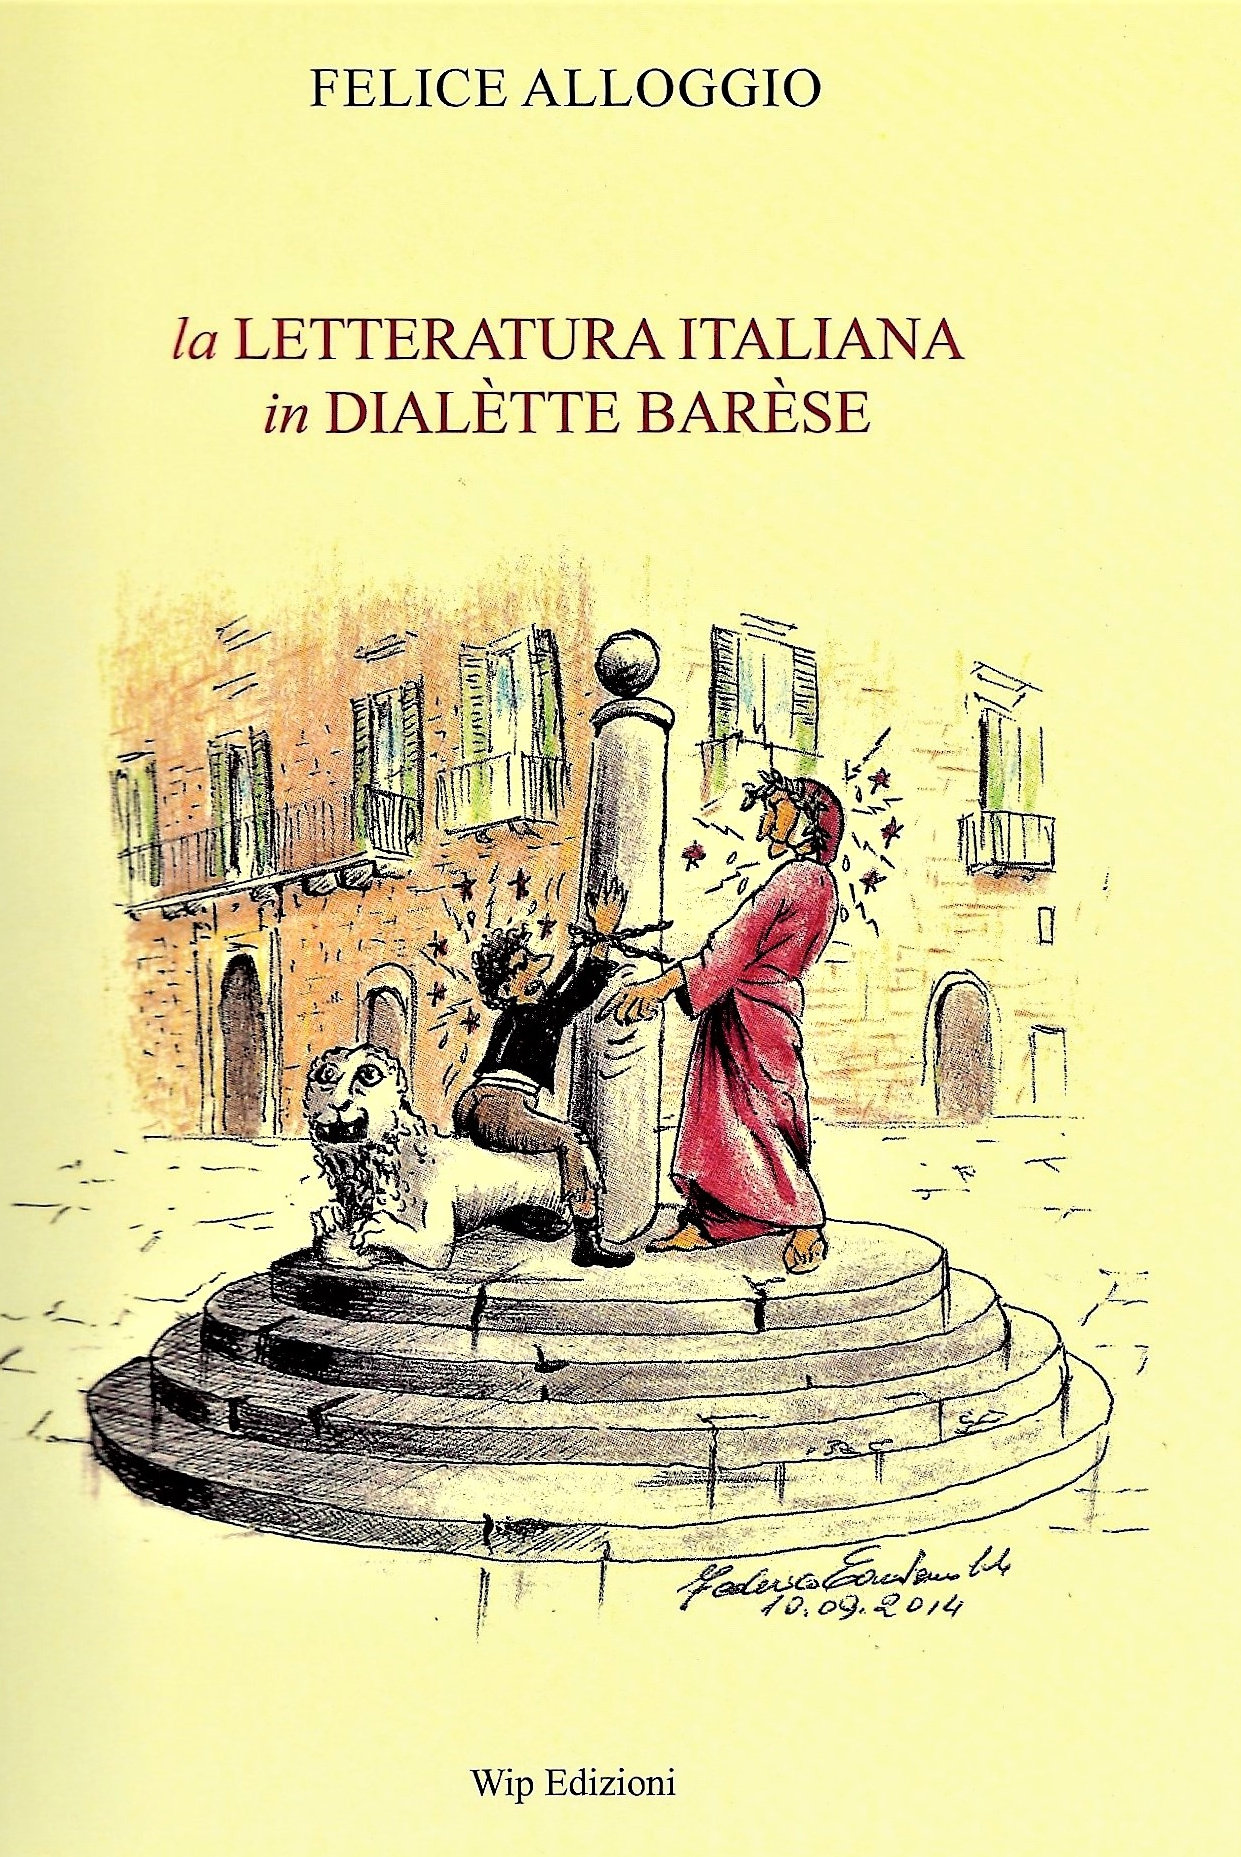 Poesie Di Natale In Dialetto Barese Per Bambini.Anche La Letteratura Italiana Si Puo Leggere In Dialetto Barese Vittorio Polito